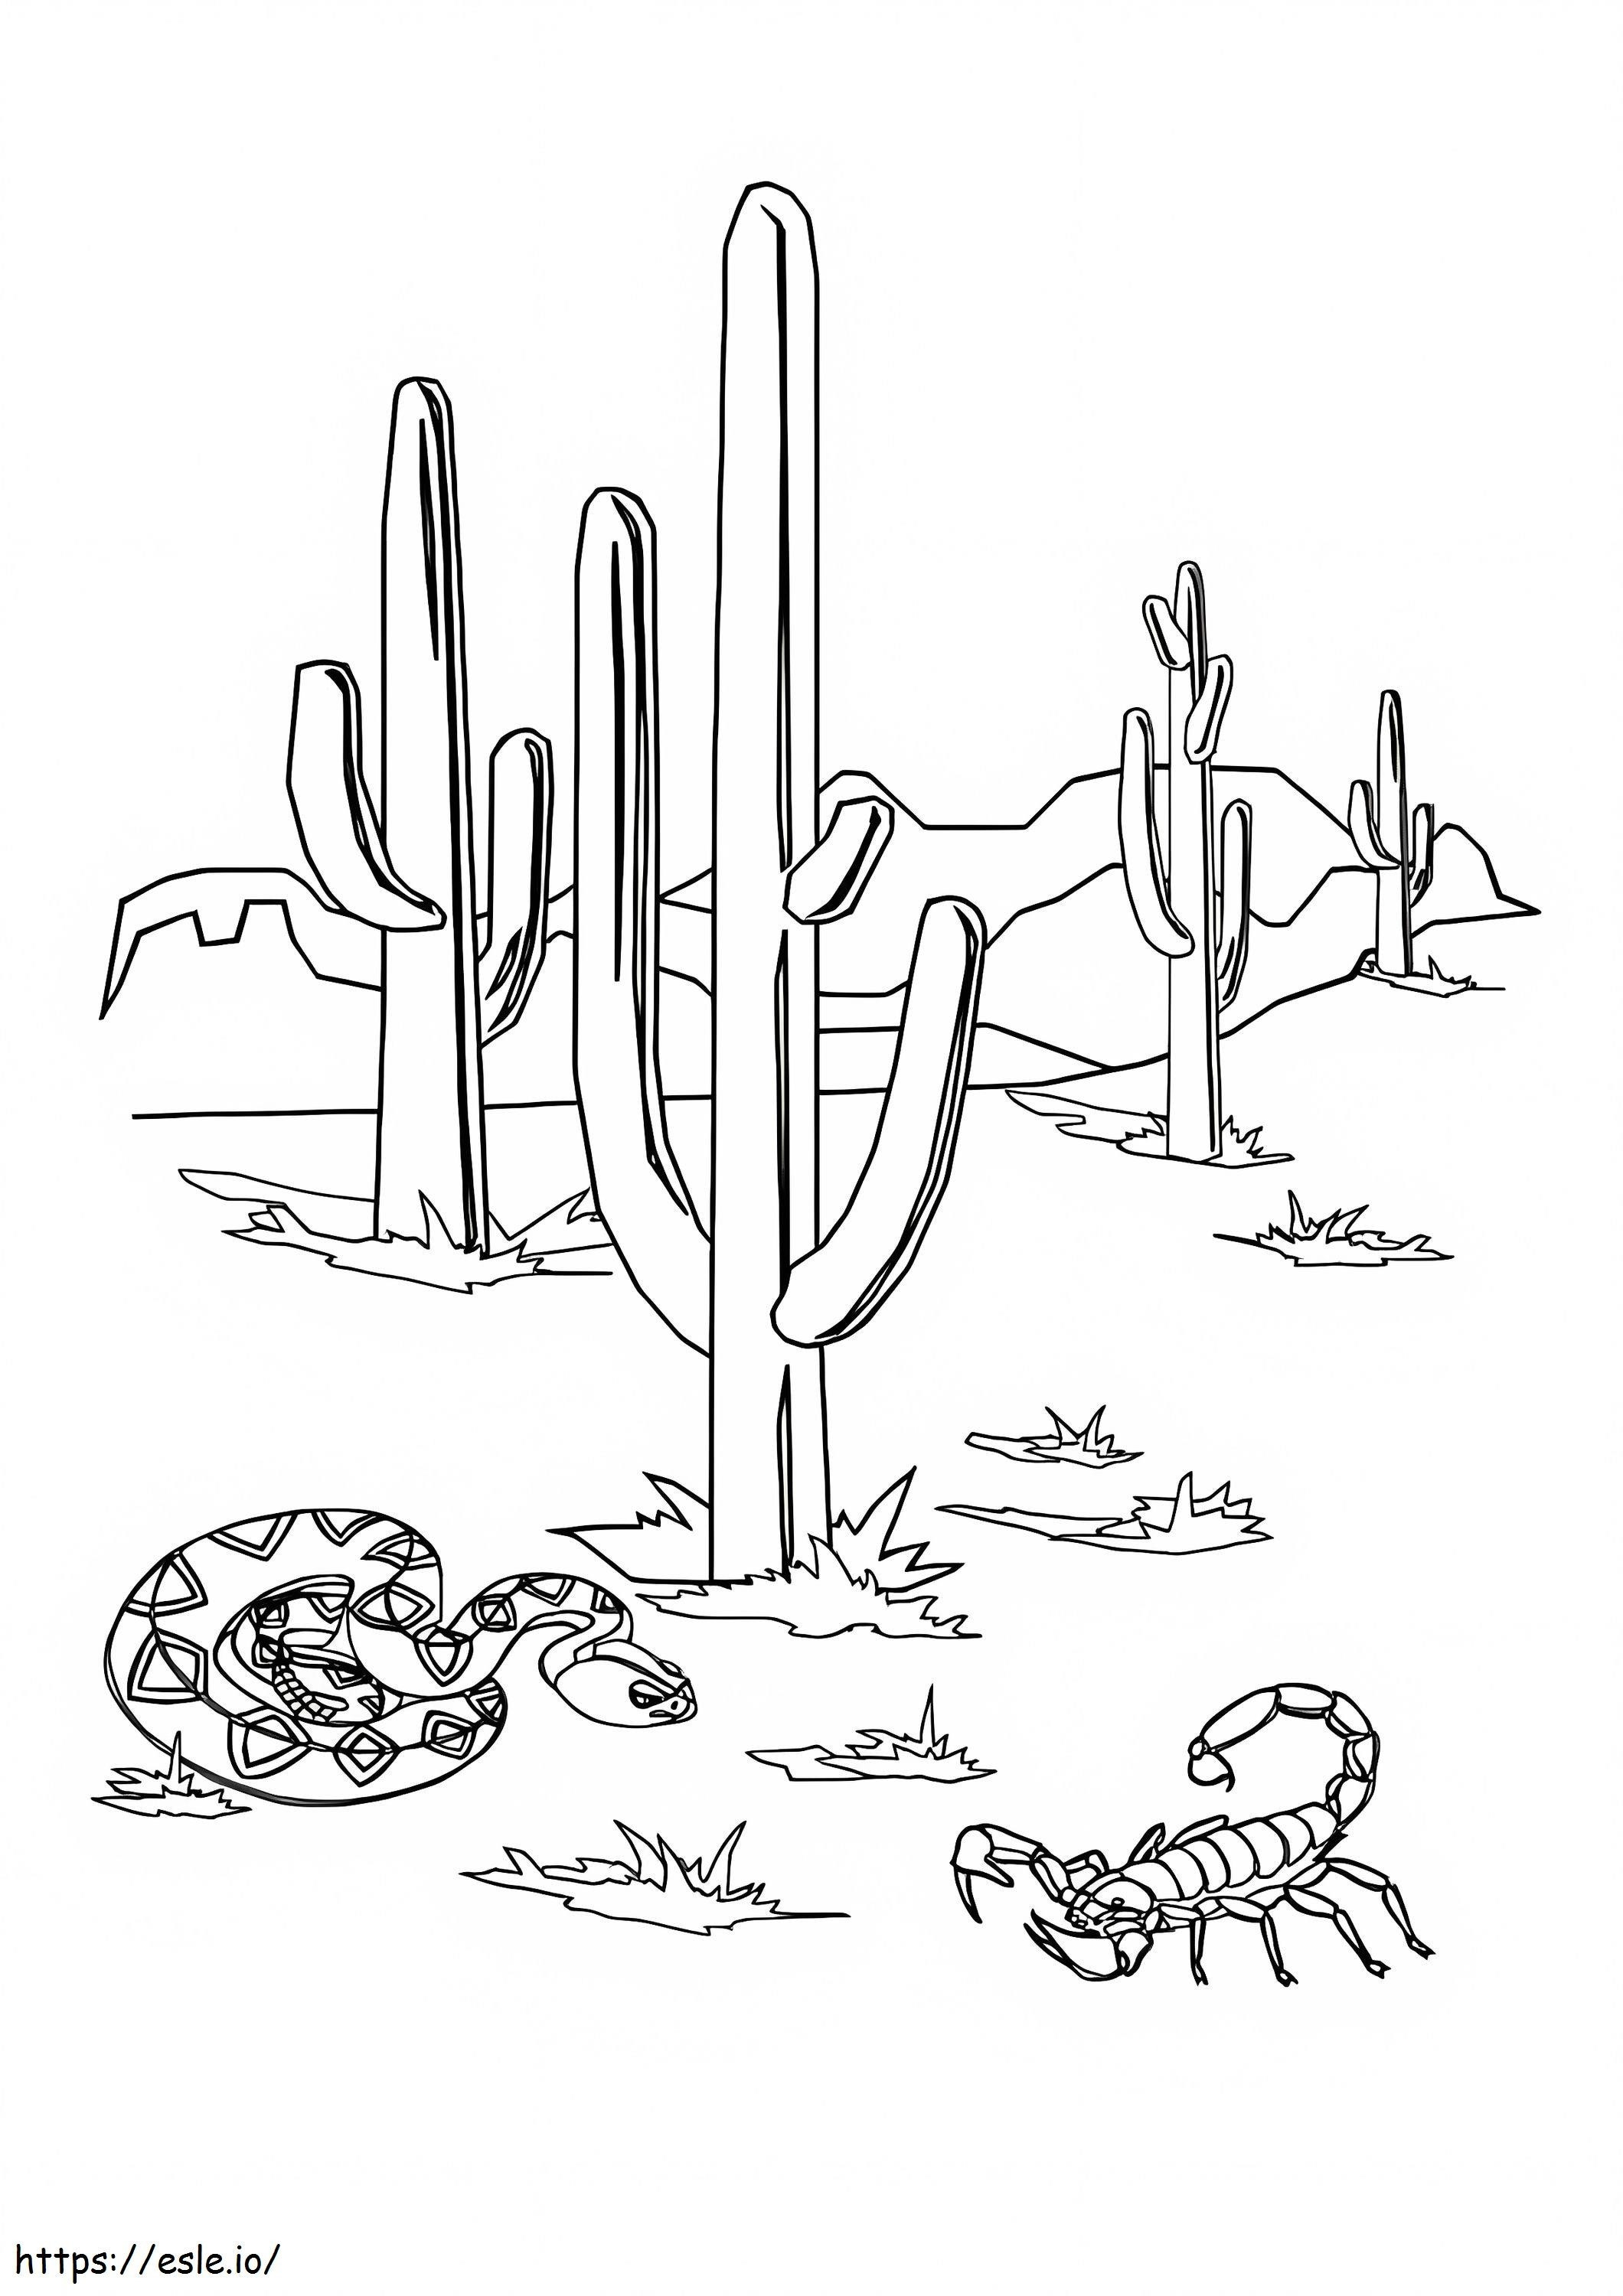 Woestijn Schorpioen En Slang kleurplaat kleurplaat